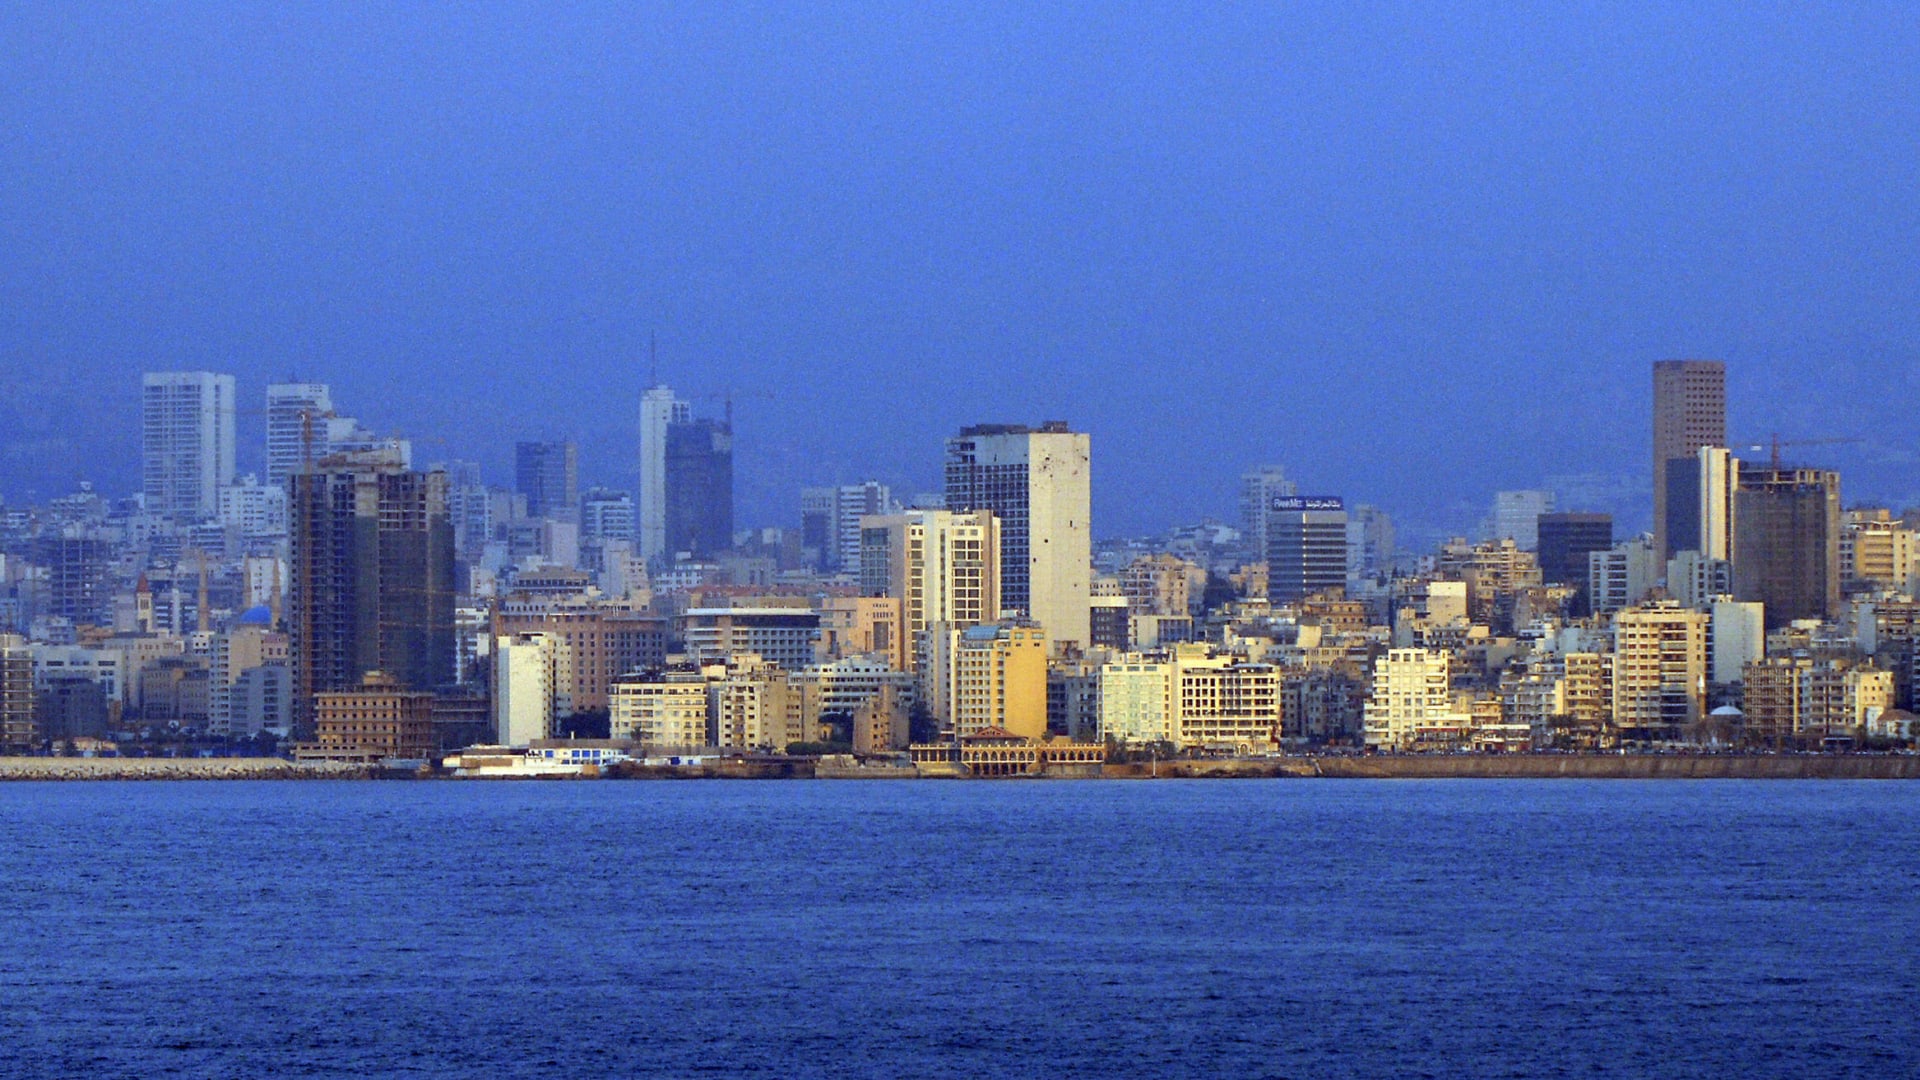 وزير الطاقة اللبناني يؤكد انتظار بلاده الموافقة الأمريكية النهائية على "جر الكهرباء"